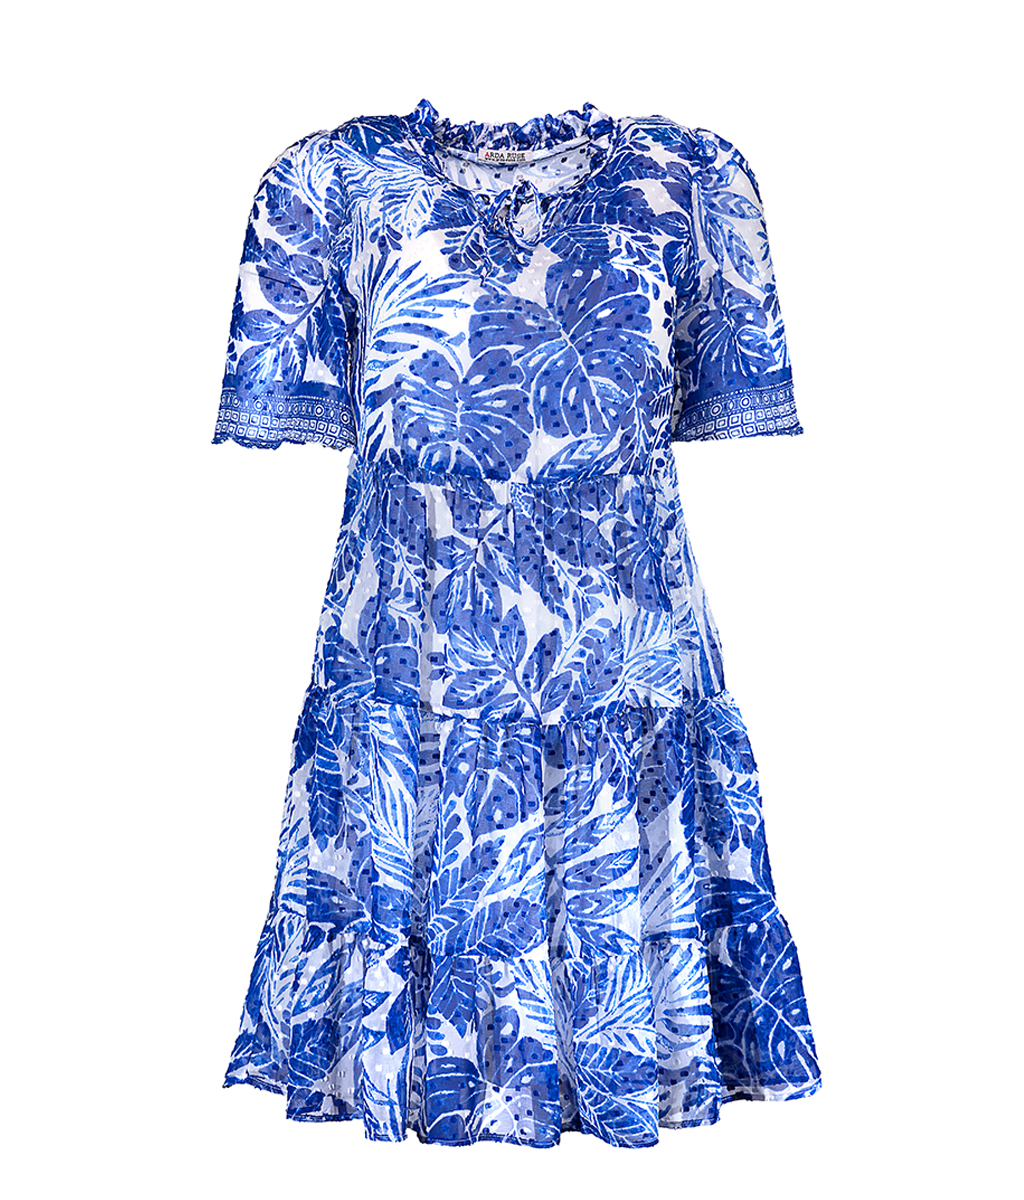 Лятна рокля от шифон (щампа синьо и бяло) на волани 